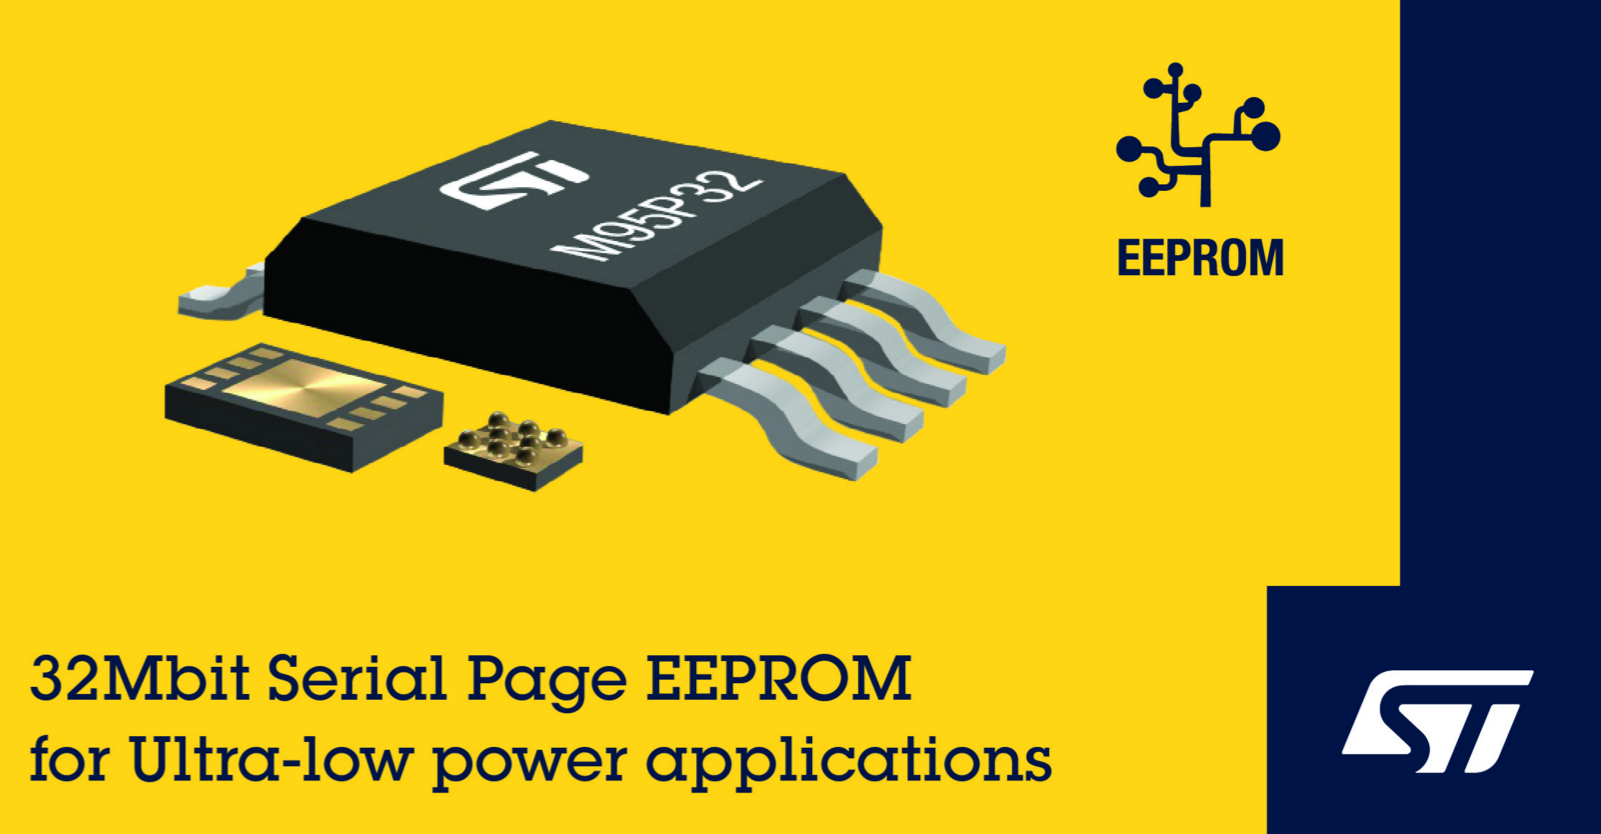 意法半导体非易失性存储器取得突破，率先在业界推出串行页EEPROM